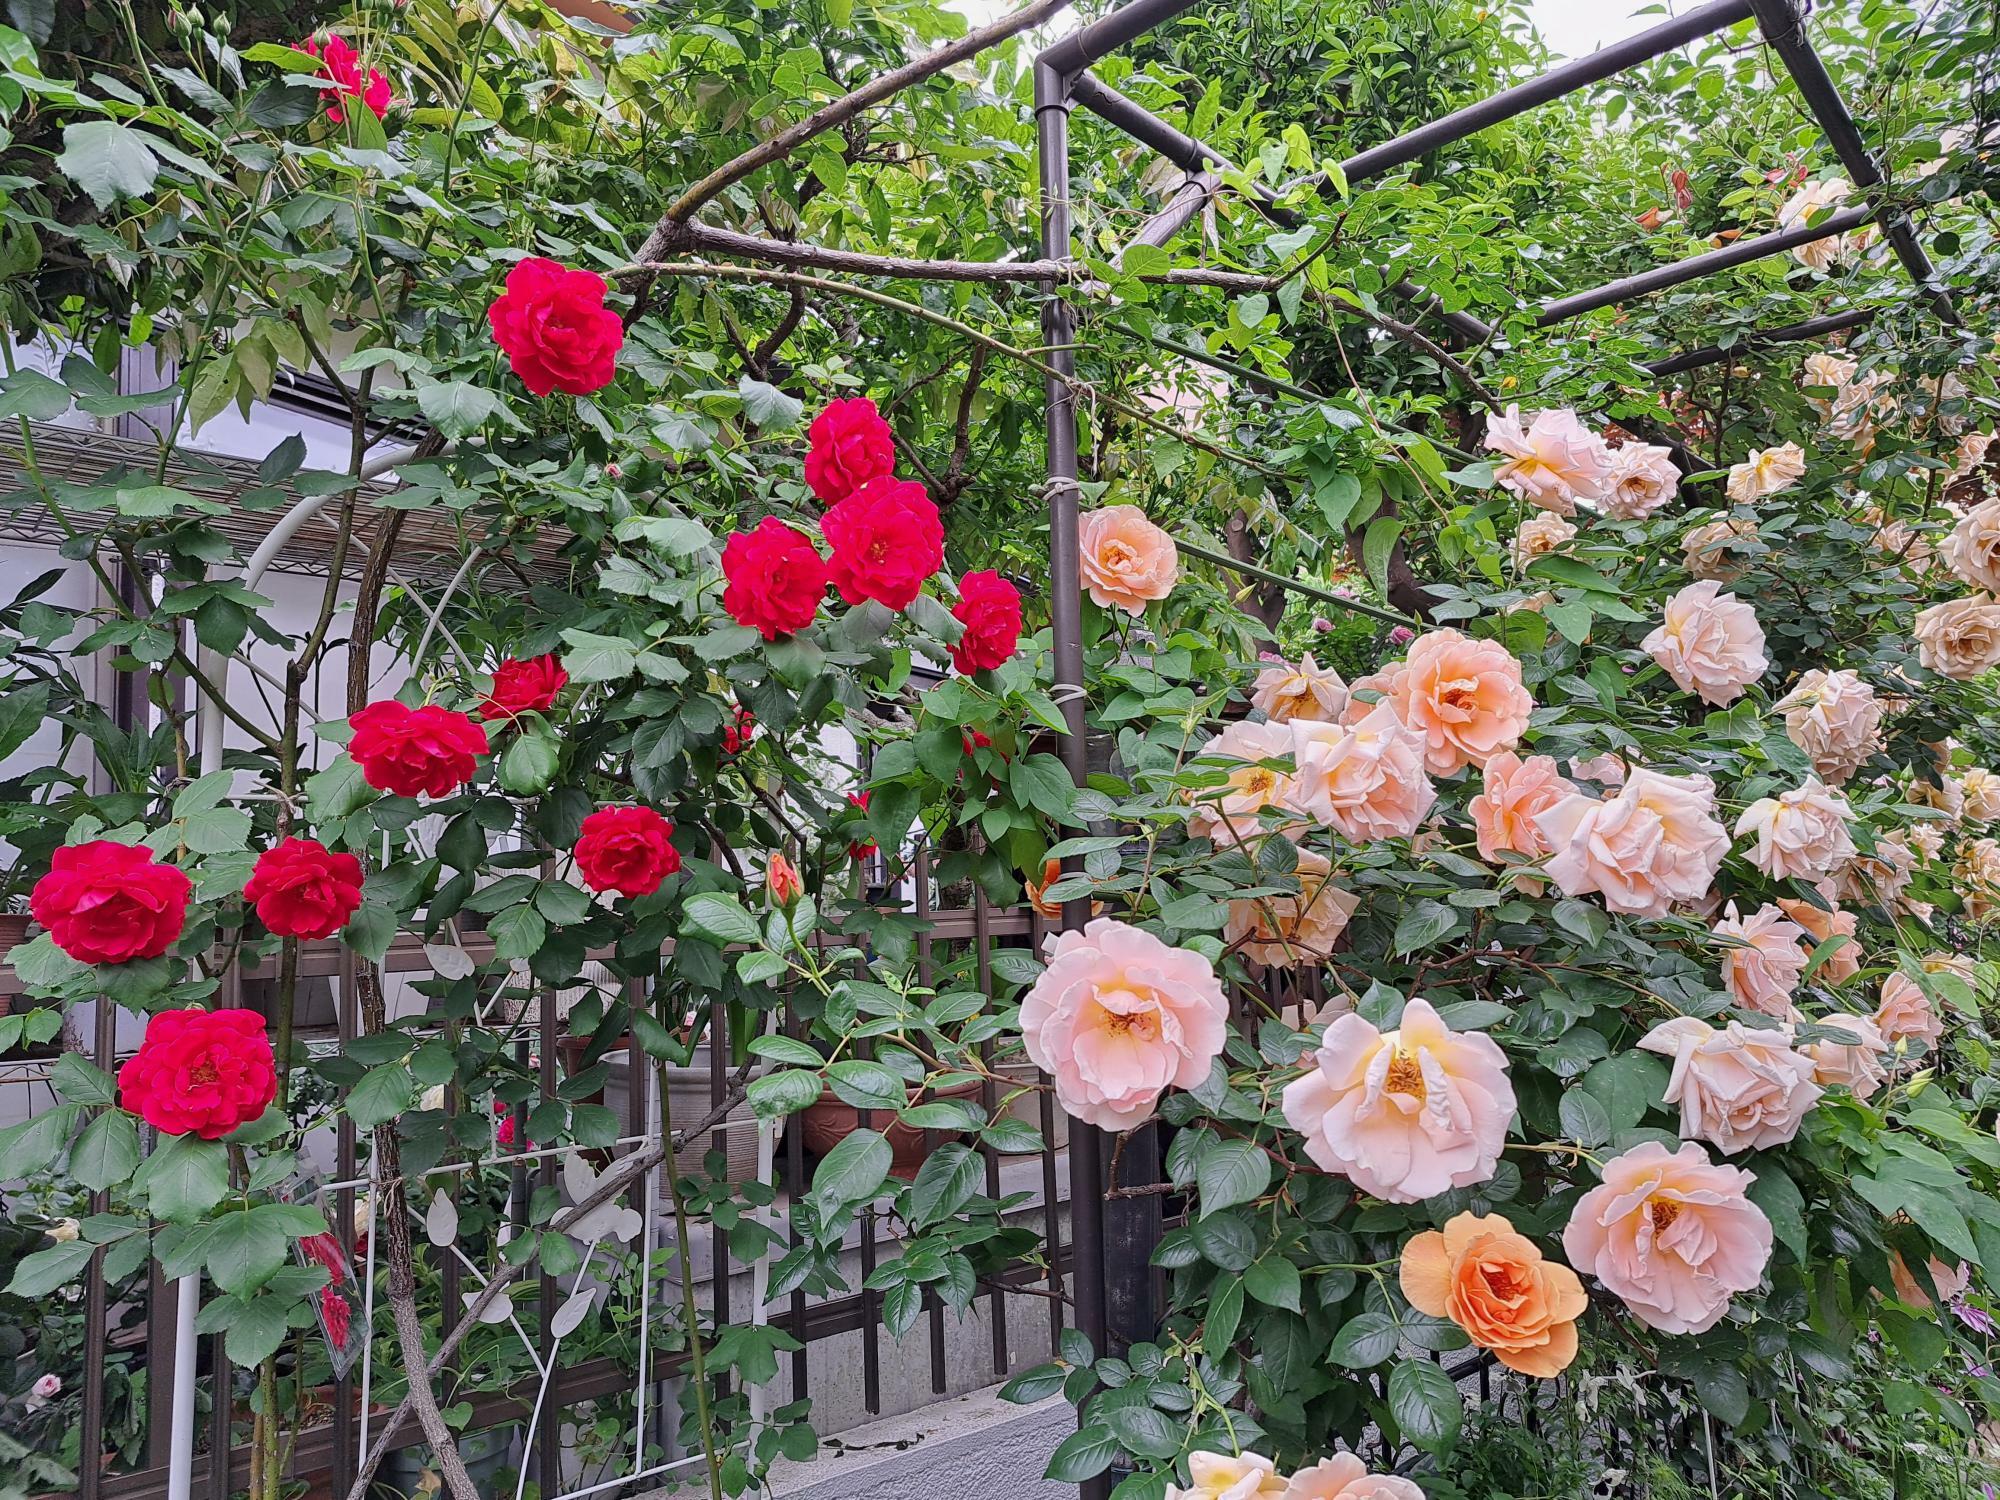 「いちかわオープンガーデン」に参加中のお宅の庭は素敵な香りに包まれています。